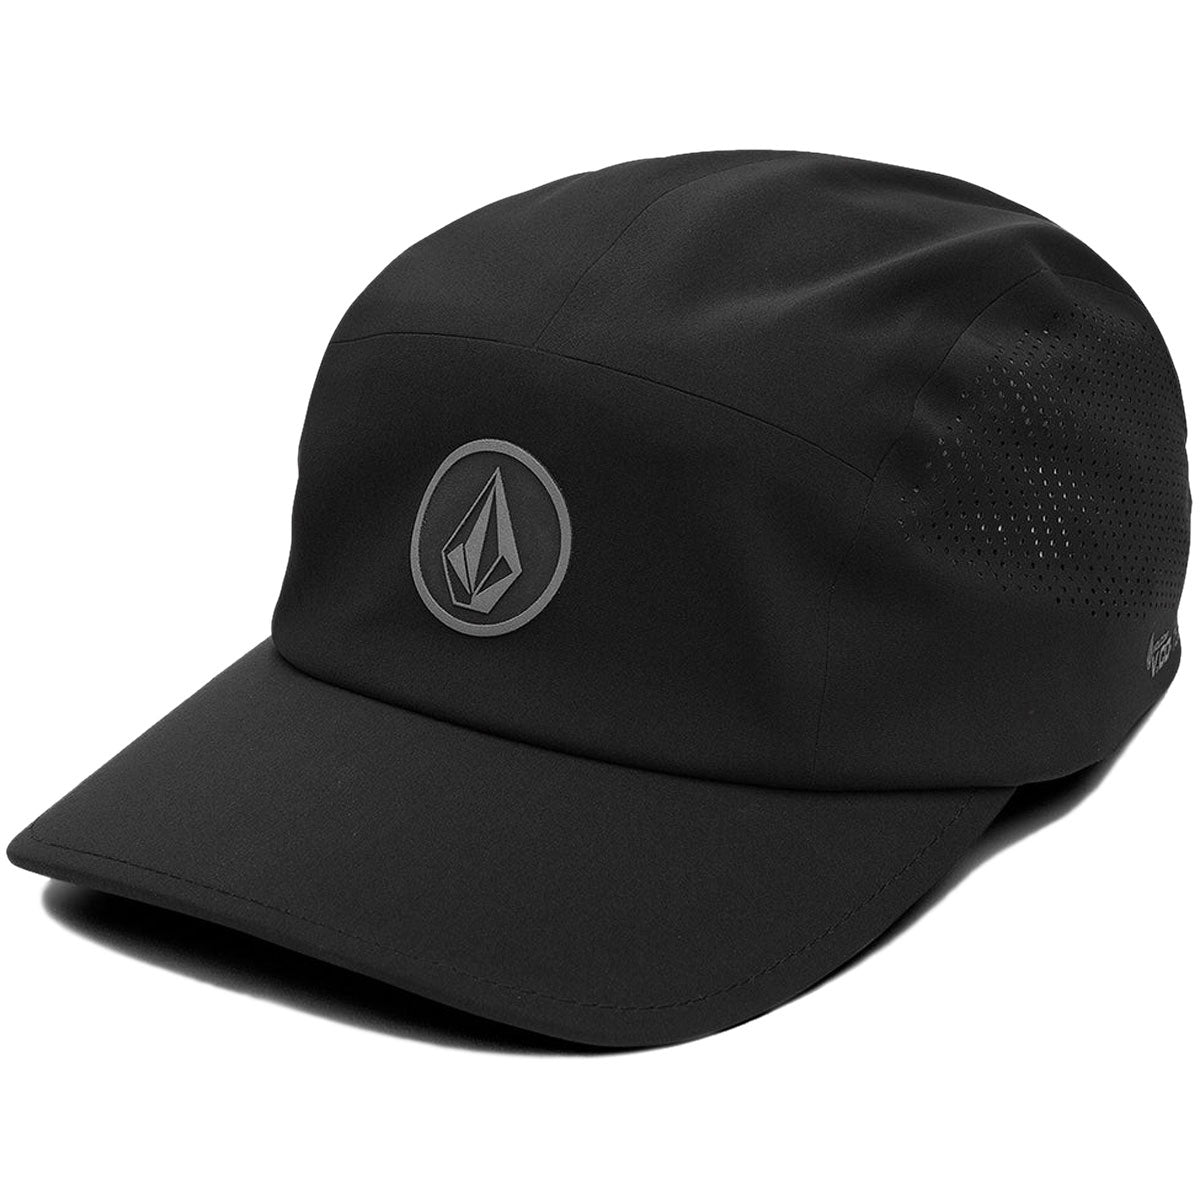 Volcom Stone Tech Delta Camper Adjustable Hat - Black image 1